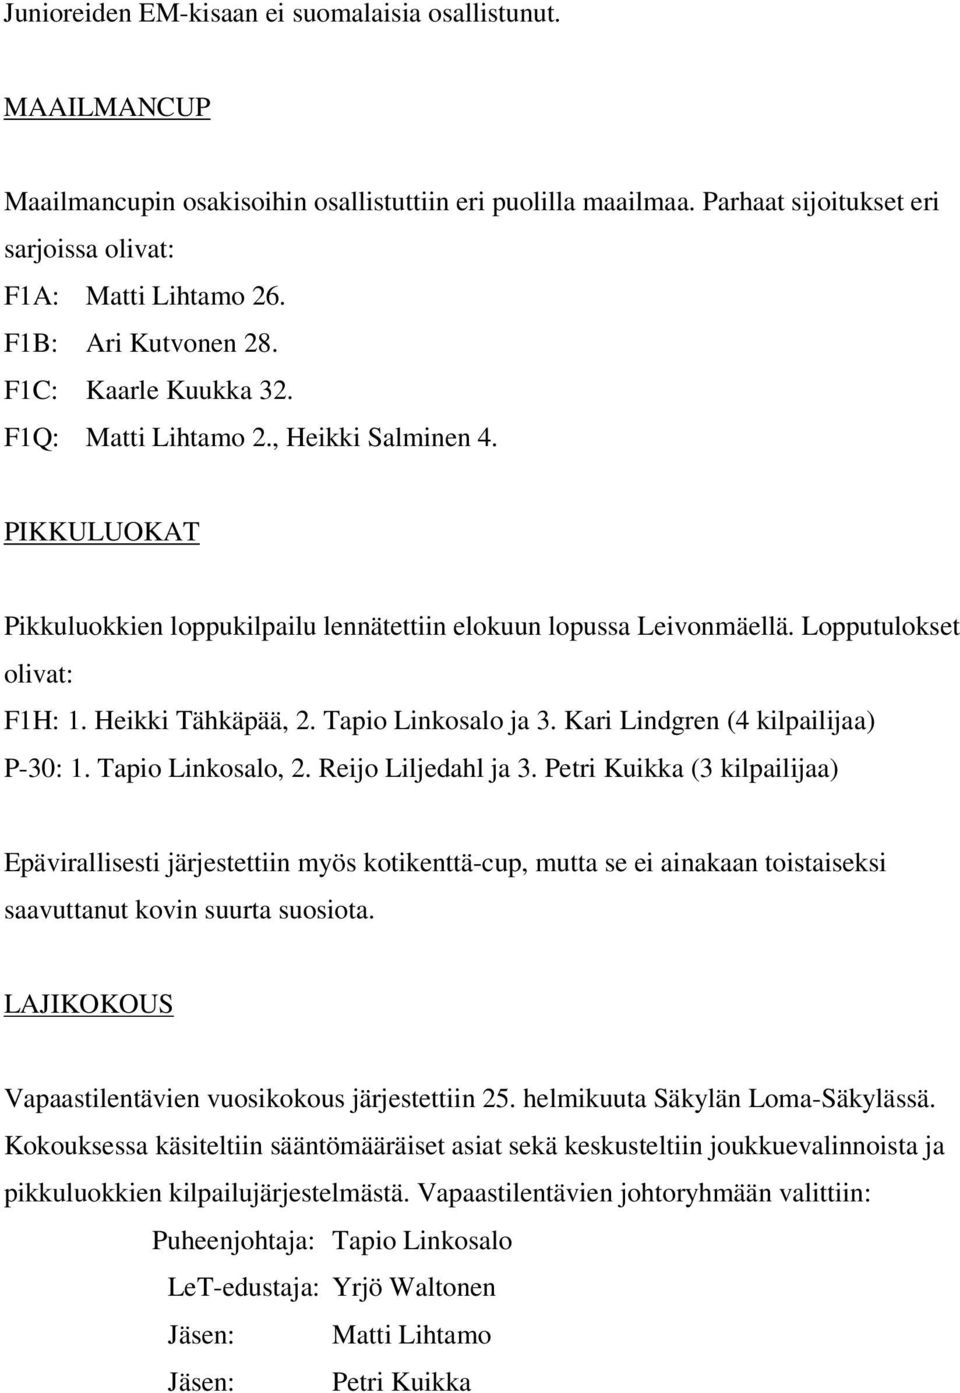 Heikki Tähkäpää, 2. Tapio Linkosalo ja 3. Kari Lindgren (4 kilpailijaa) P-30: 1. Tapio Linkosalo, 2. Reijo Liljedahl ja 3.